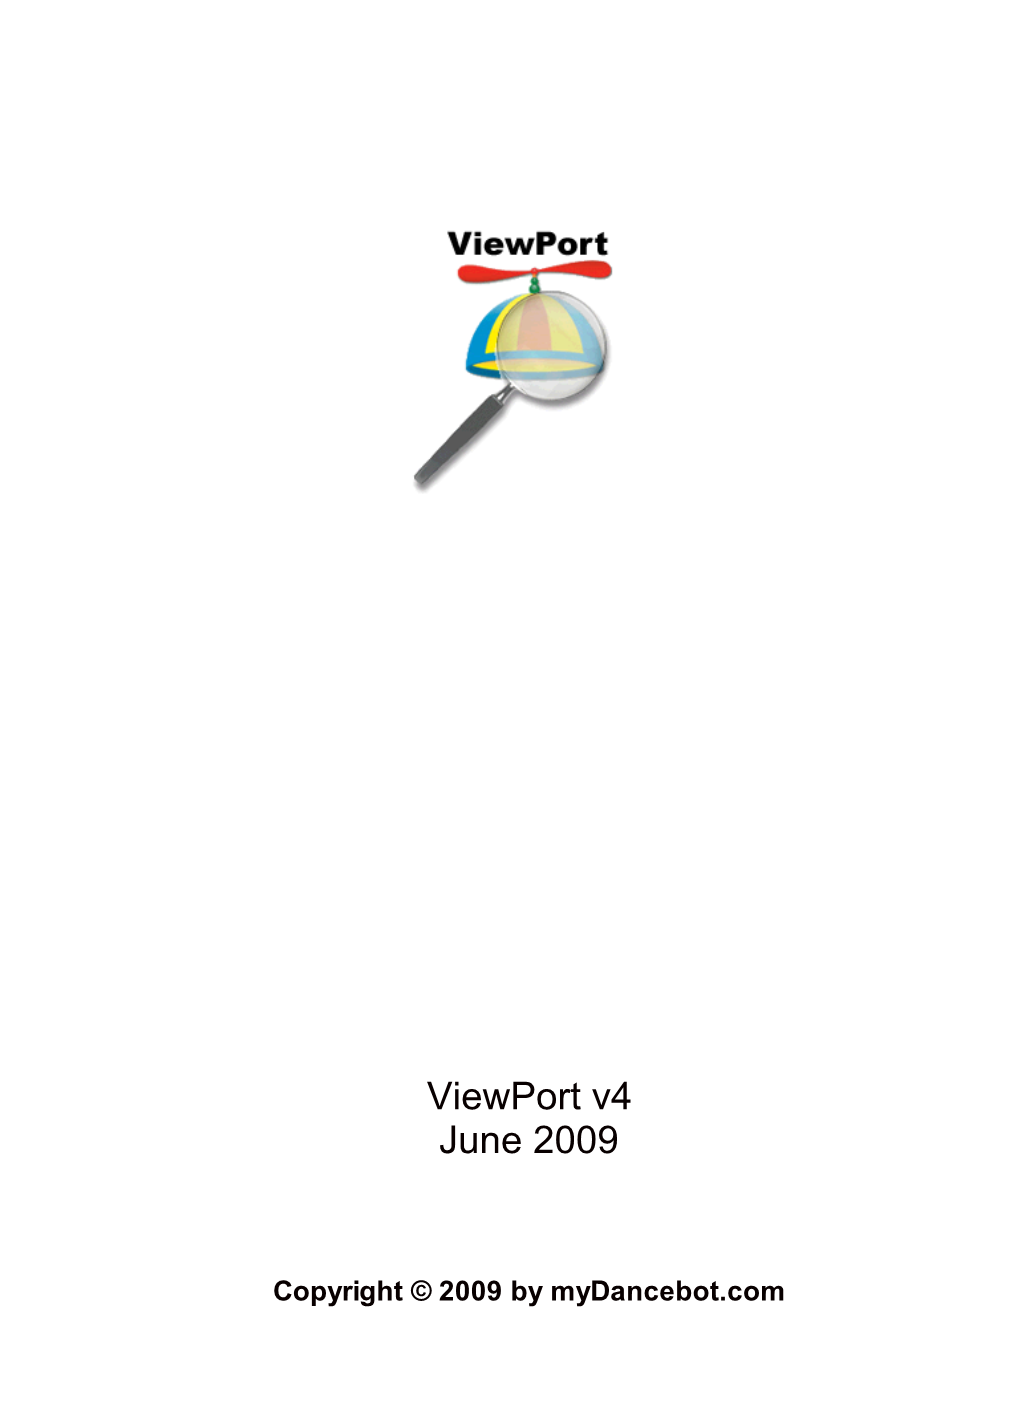 Viewport V4 June 2009